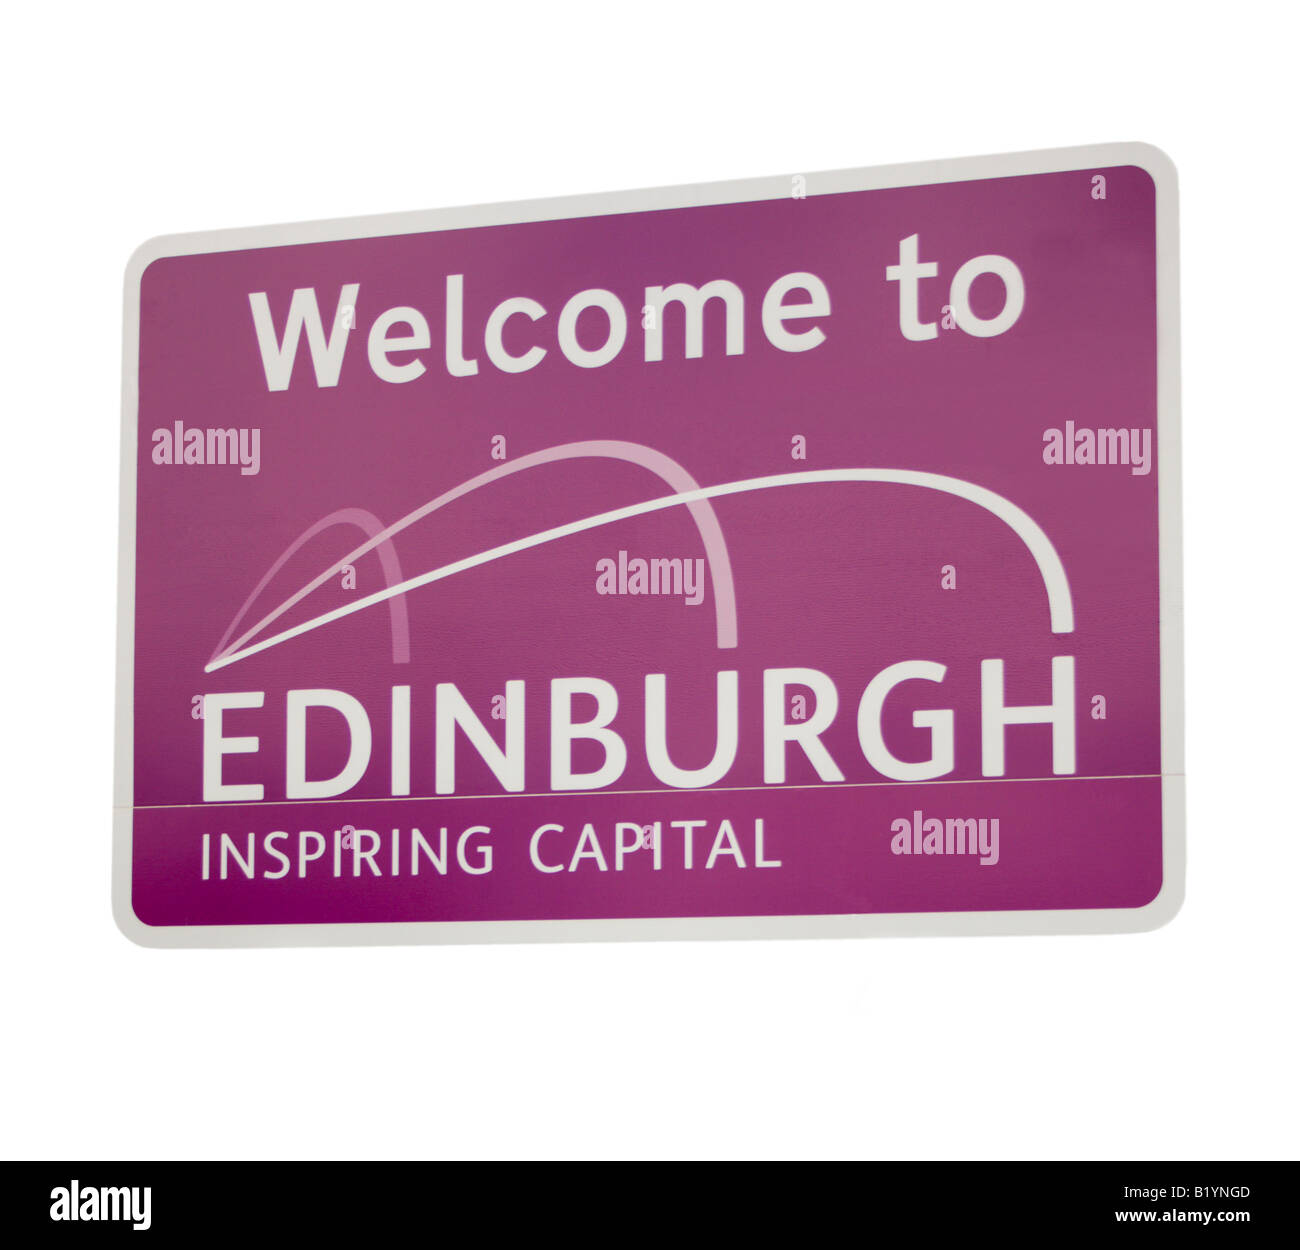 Willkommen in Edinburgh, inspirierende Hauptstadt - Straßenschild in Schottland, Großbritannien Stockfoto